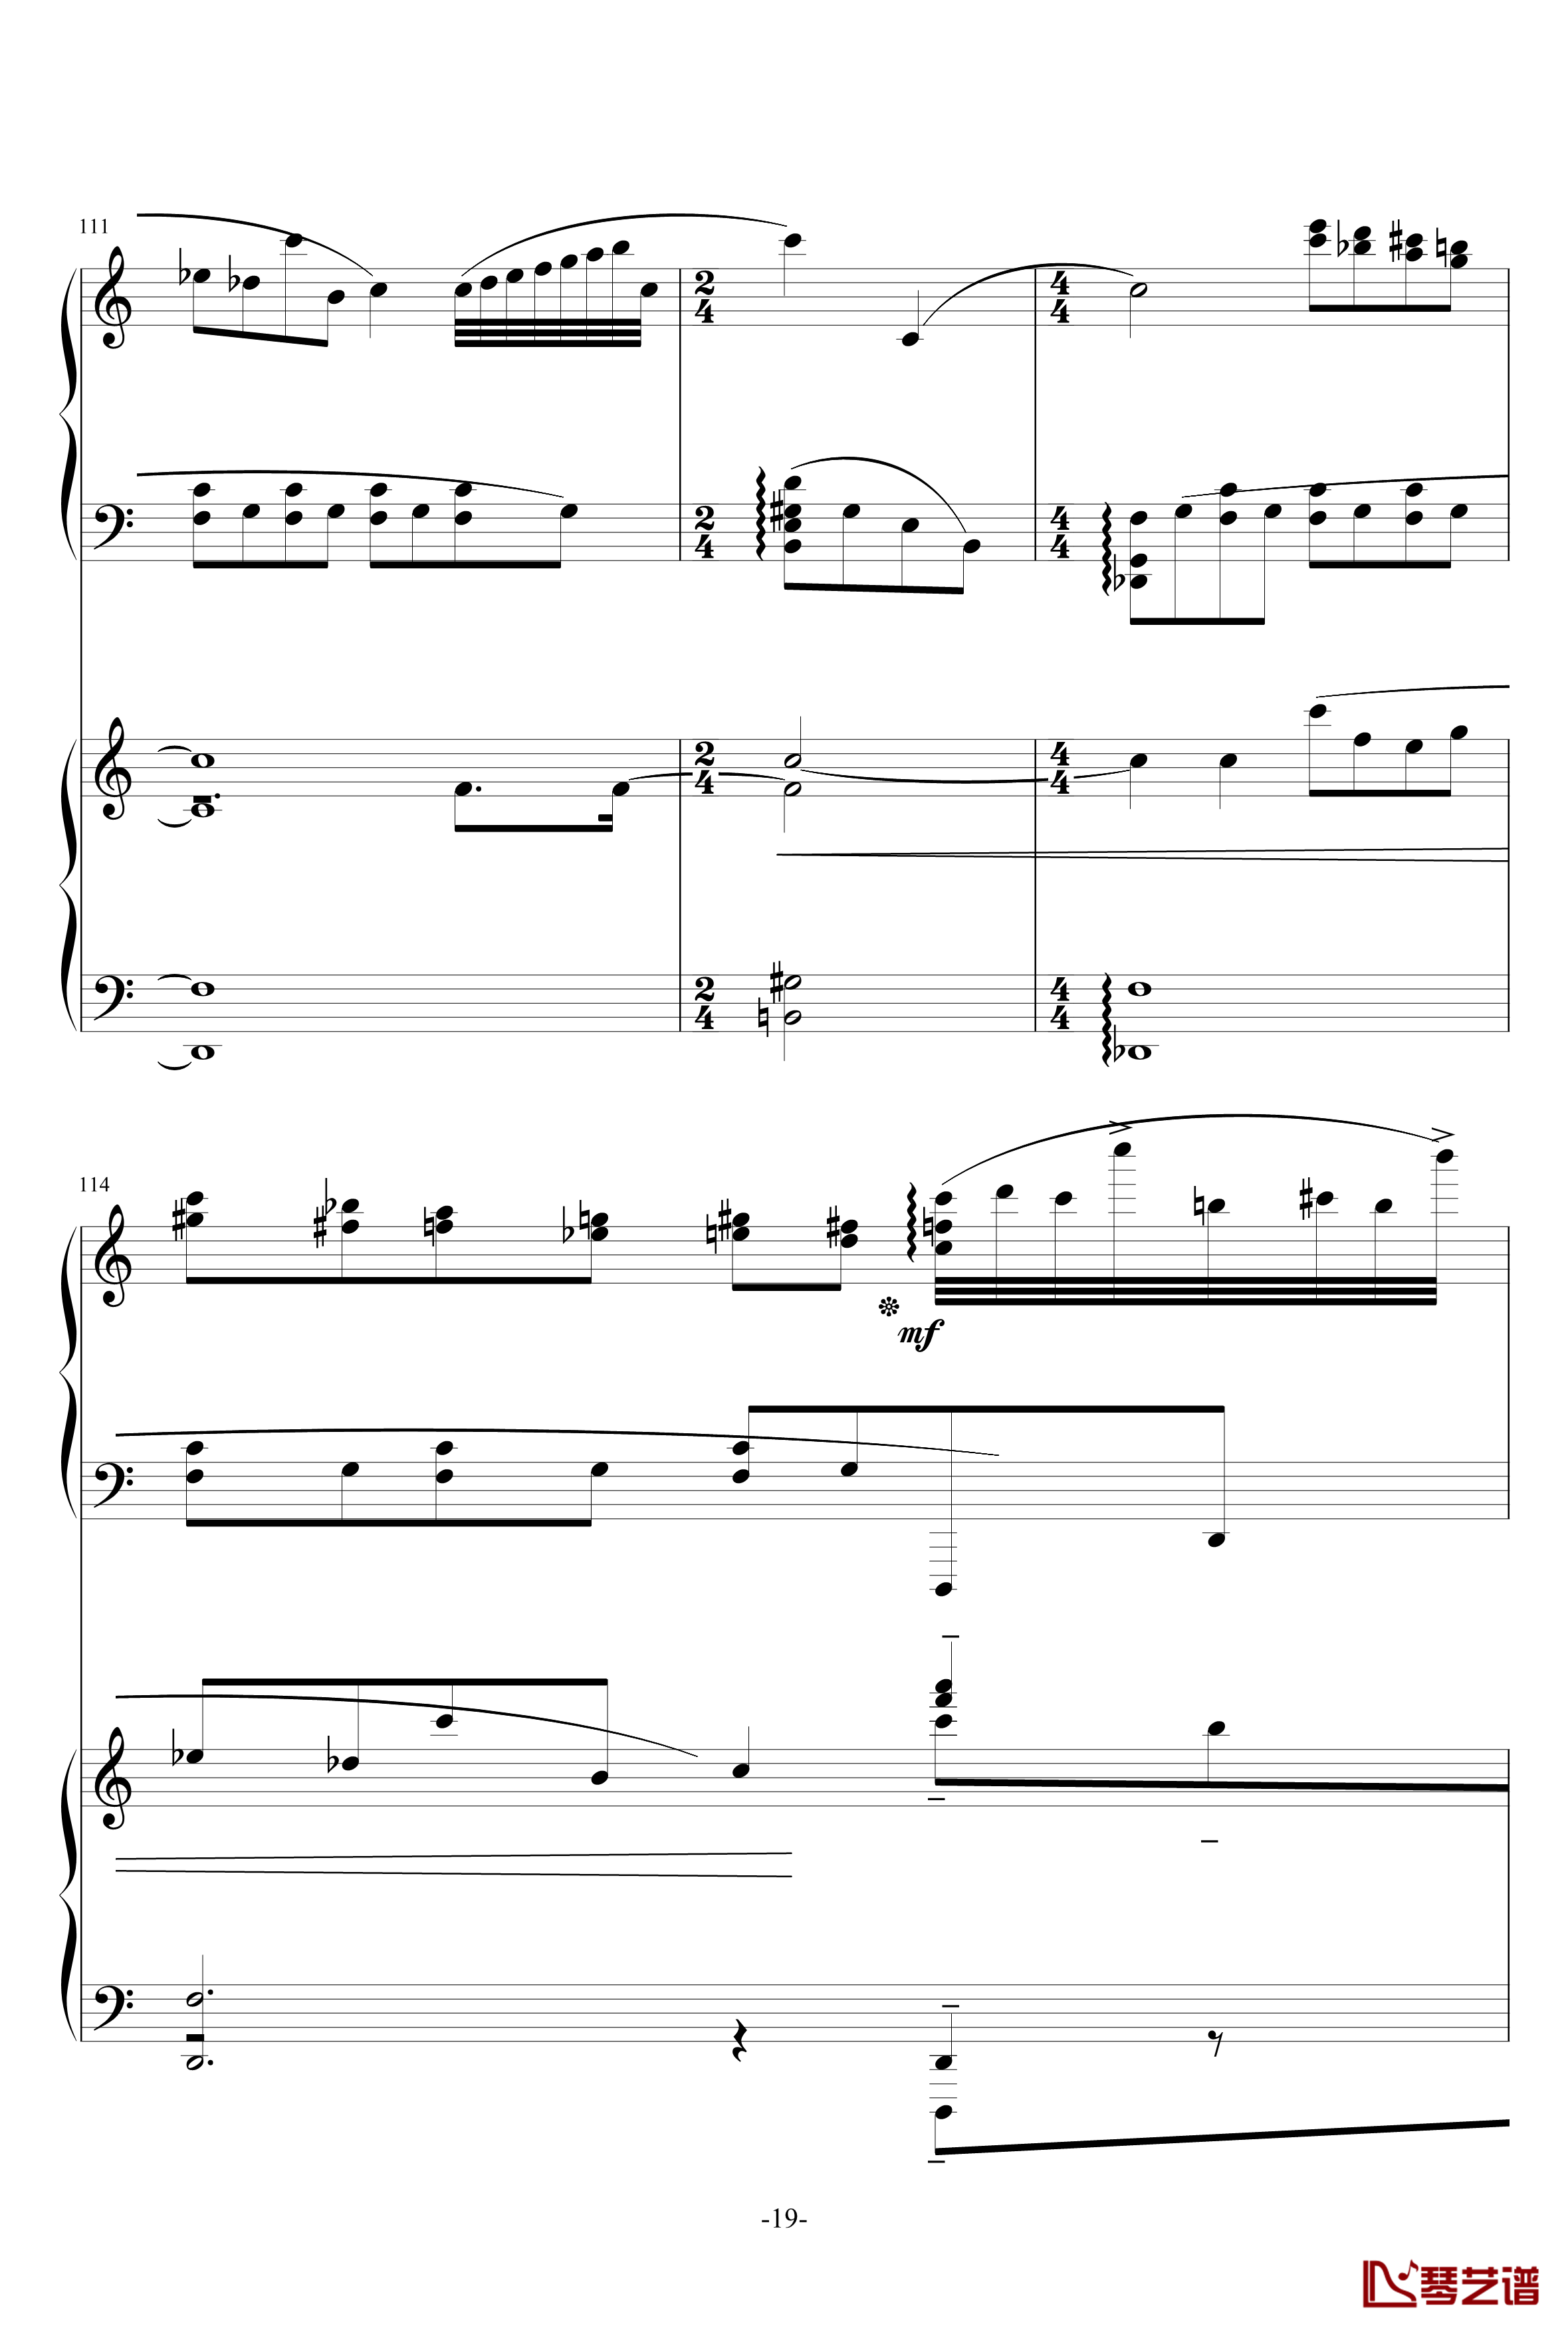 普罗科菲耶夫第三钢琴协奏曲第二乐章钢琴谱19